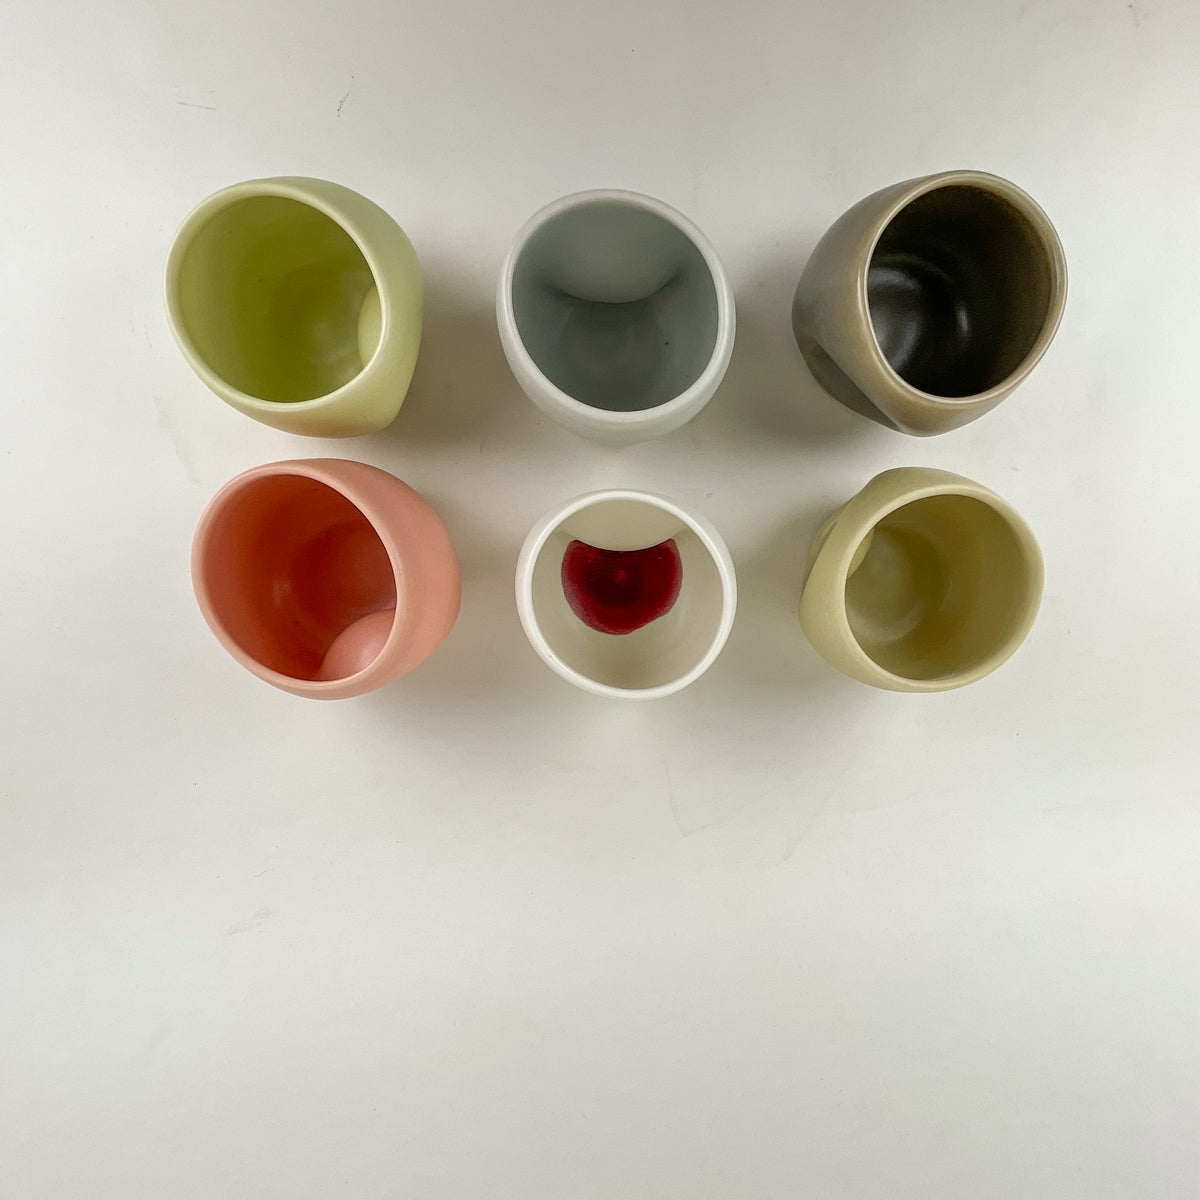 <!--3600--!>Glassware - Ceramic Divot Cup